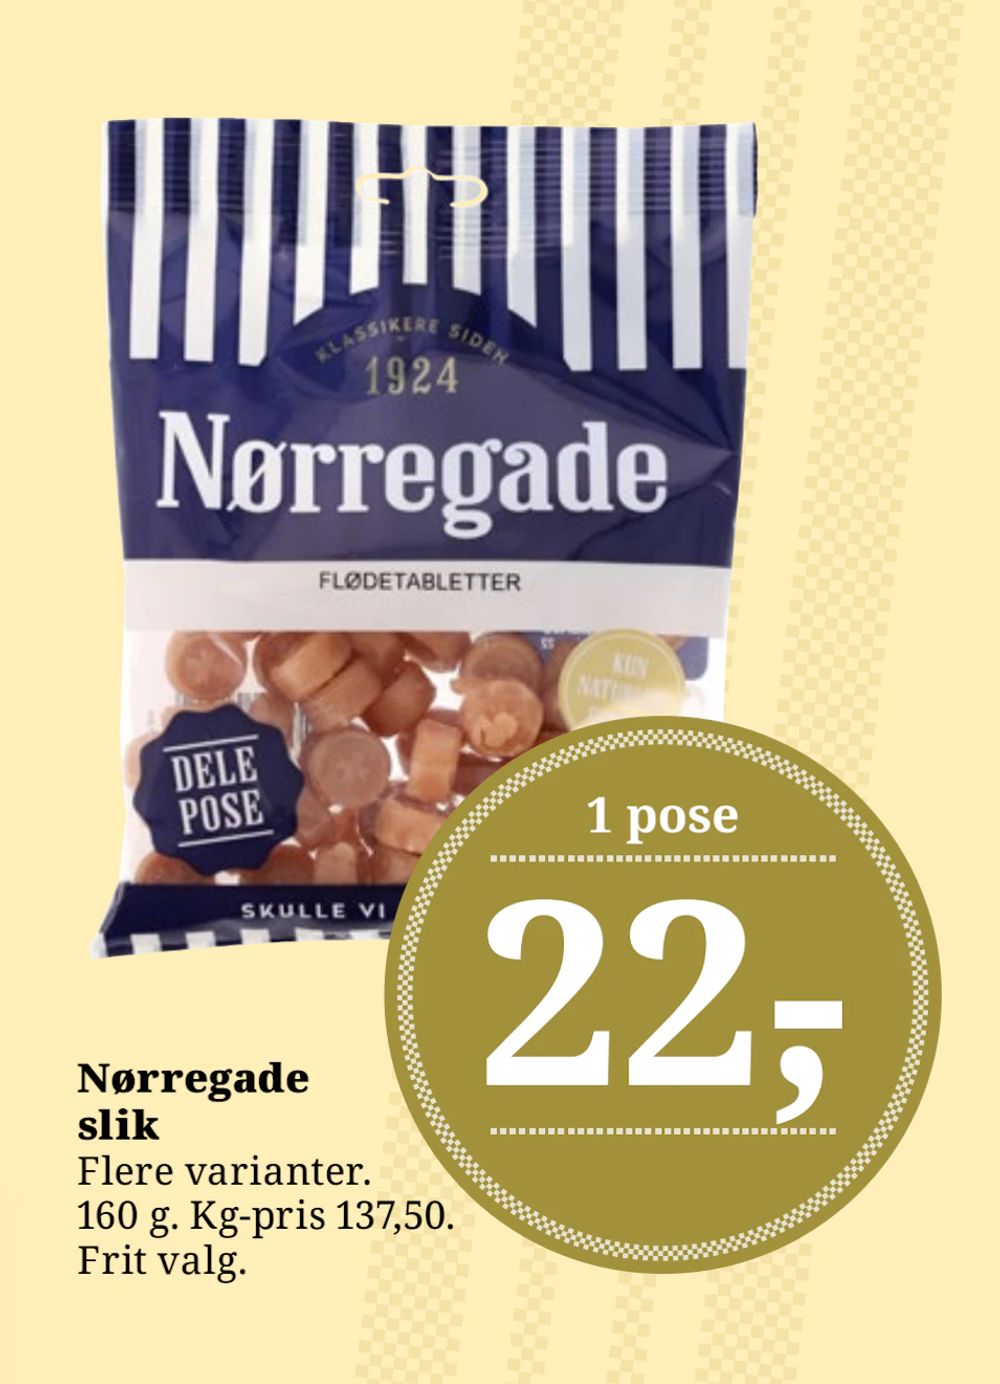 Tilbud på Nørregade slik fra Brugsen til 22 kr.